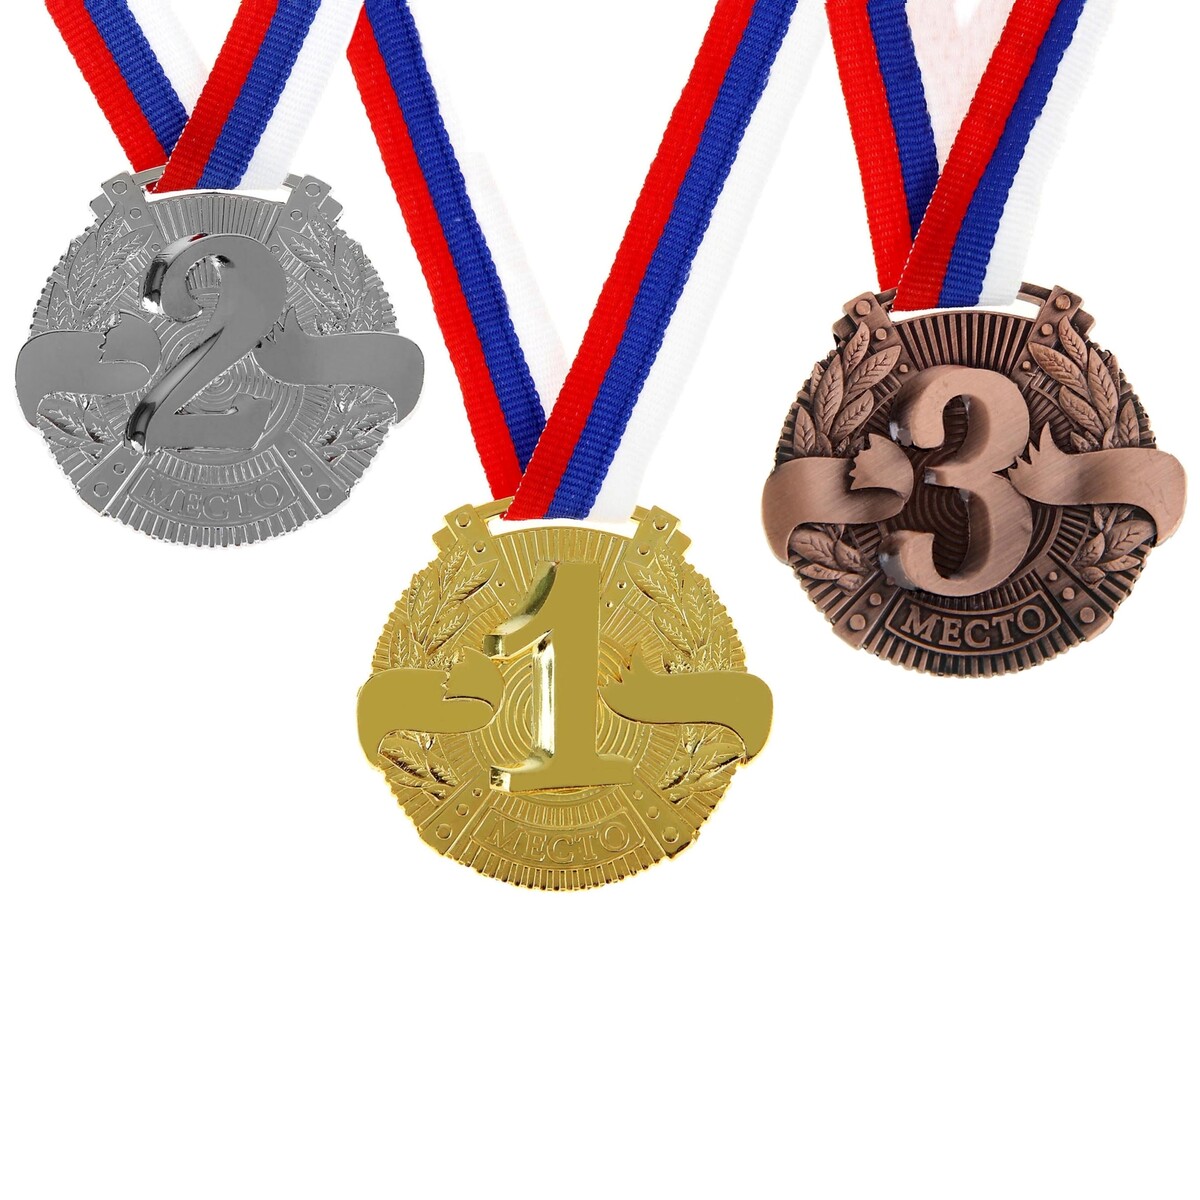 Медаль призовая 029 диам 5 см. 3 место. цвет бронз. с лентой медаль призовая 029 диам 5 см 3 место бронз с лентой